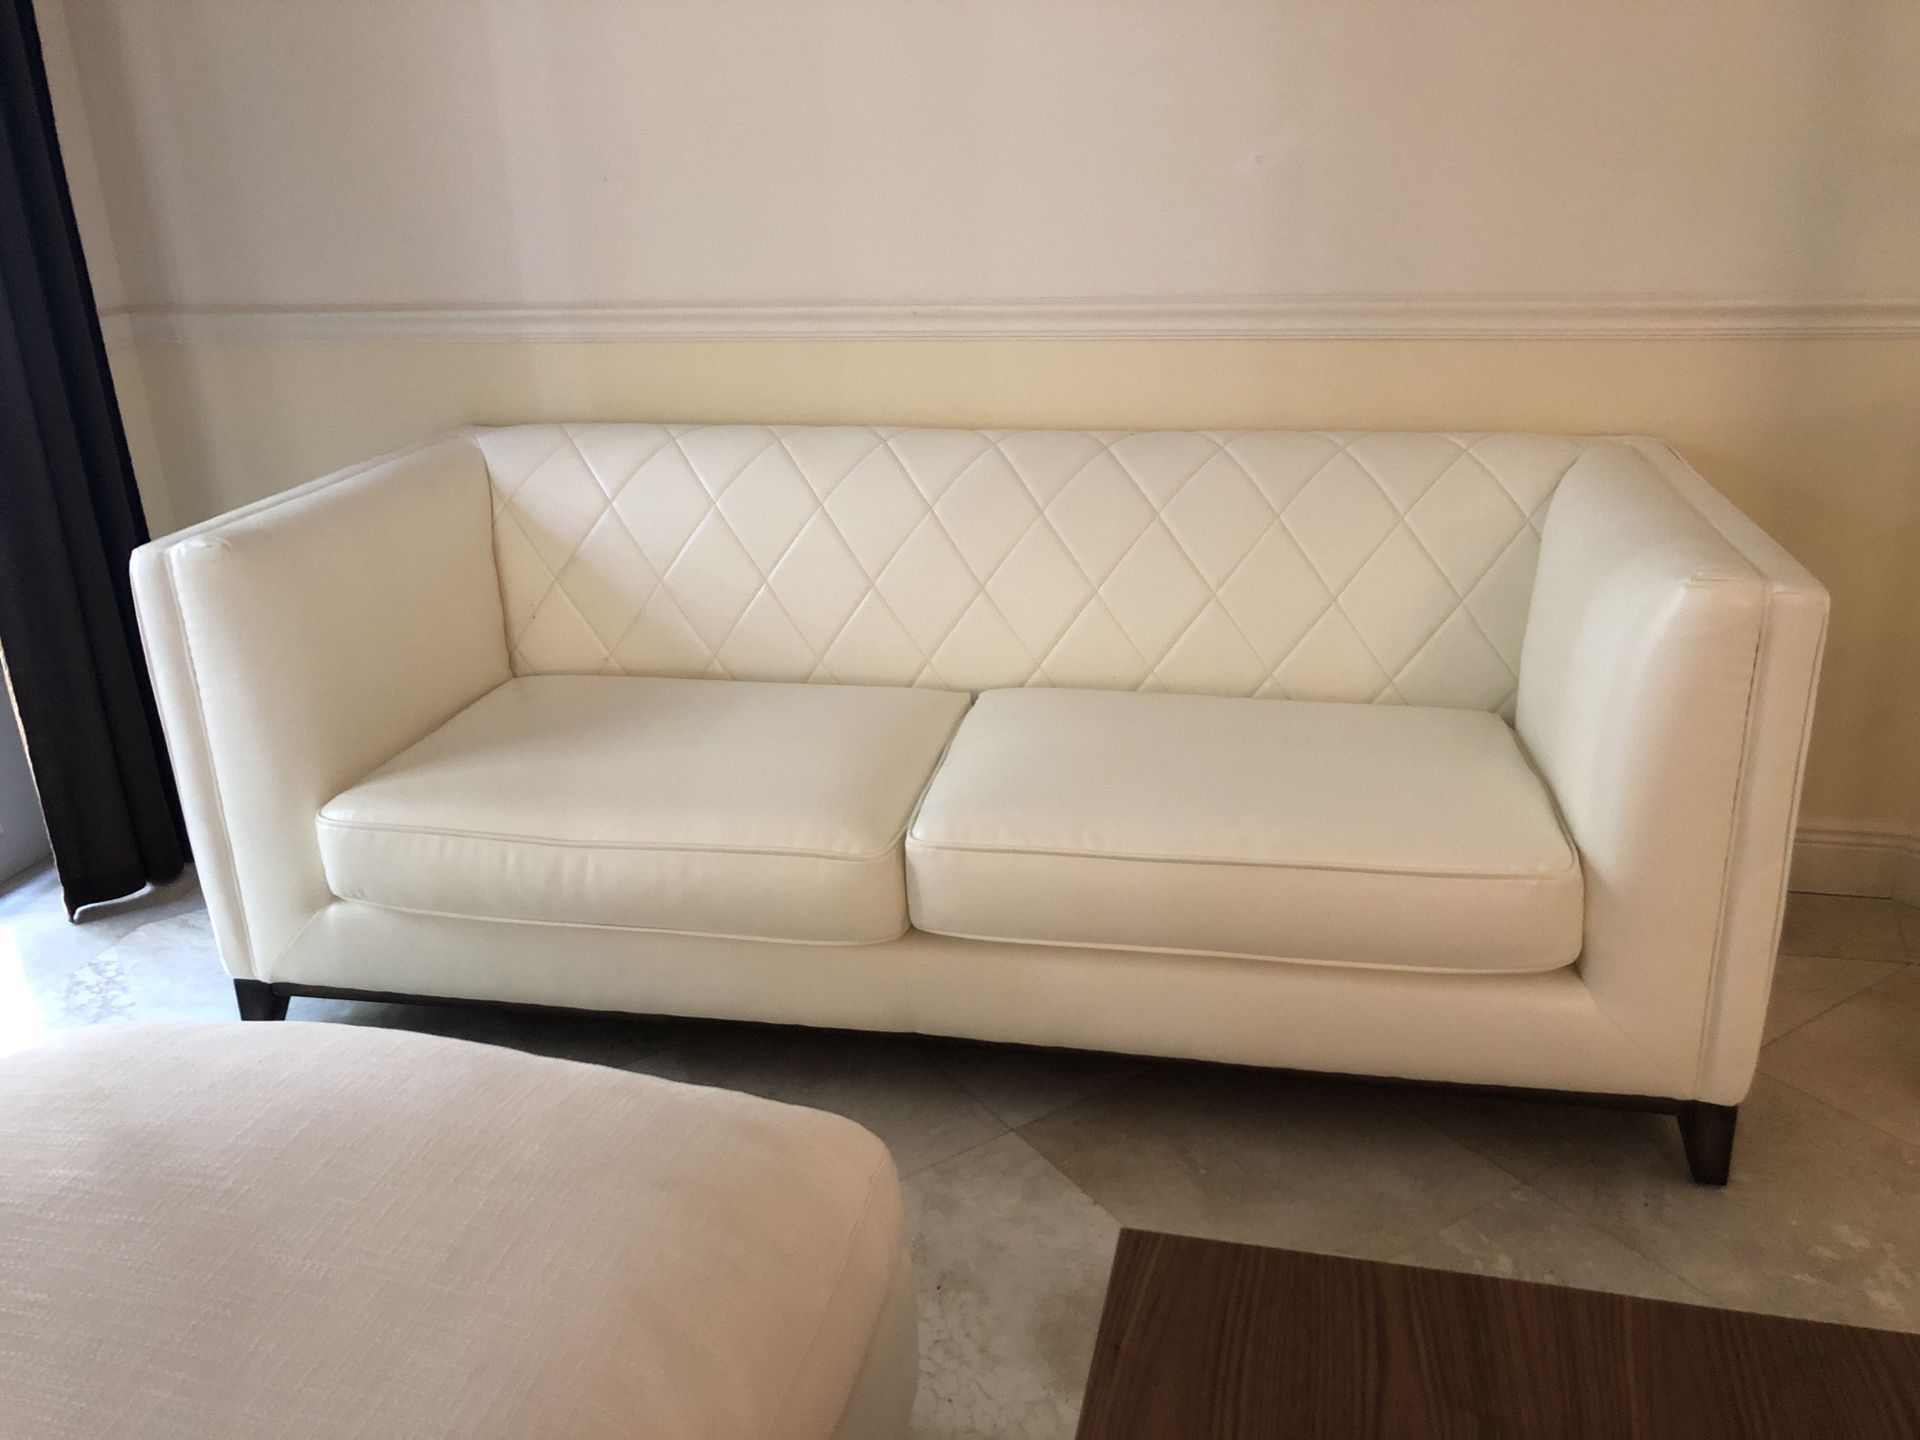 Sofa nuevo! New sofa